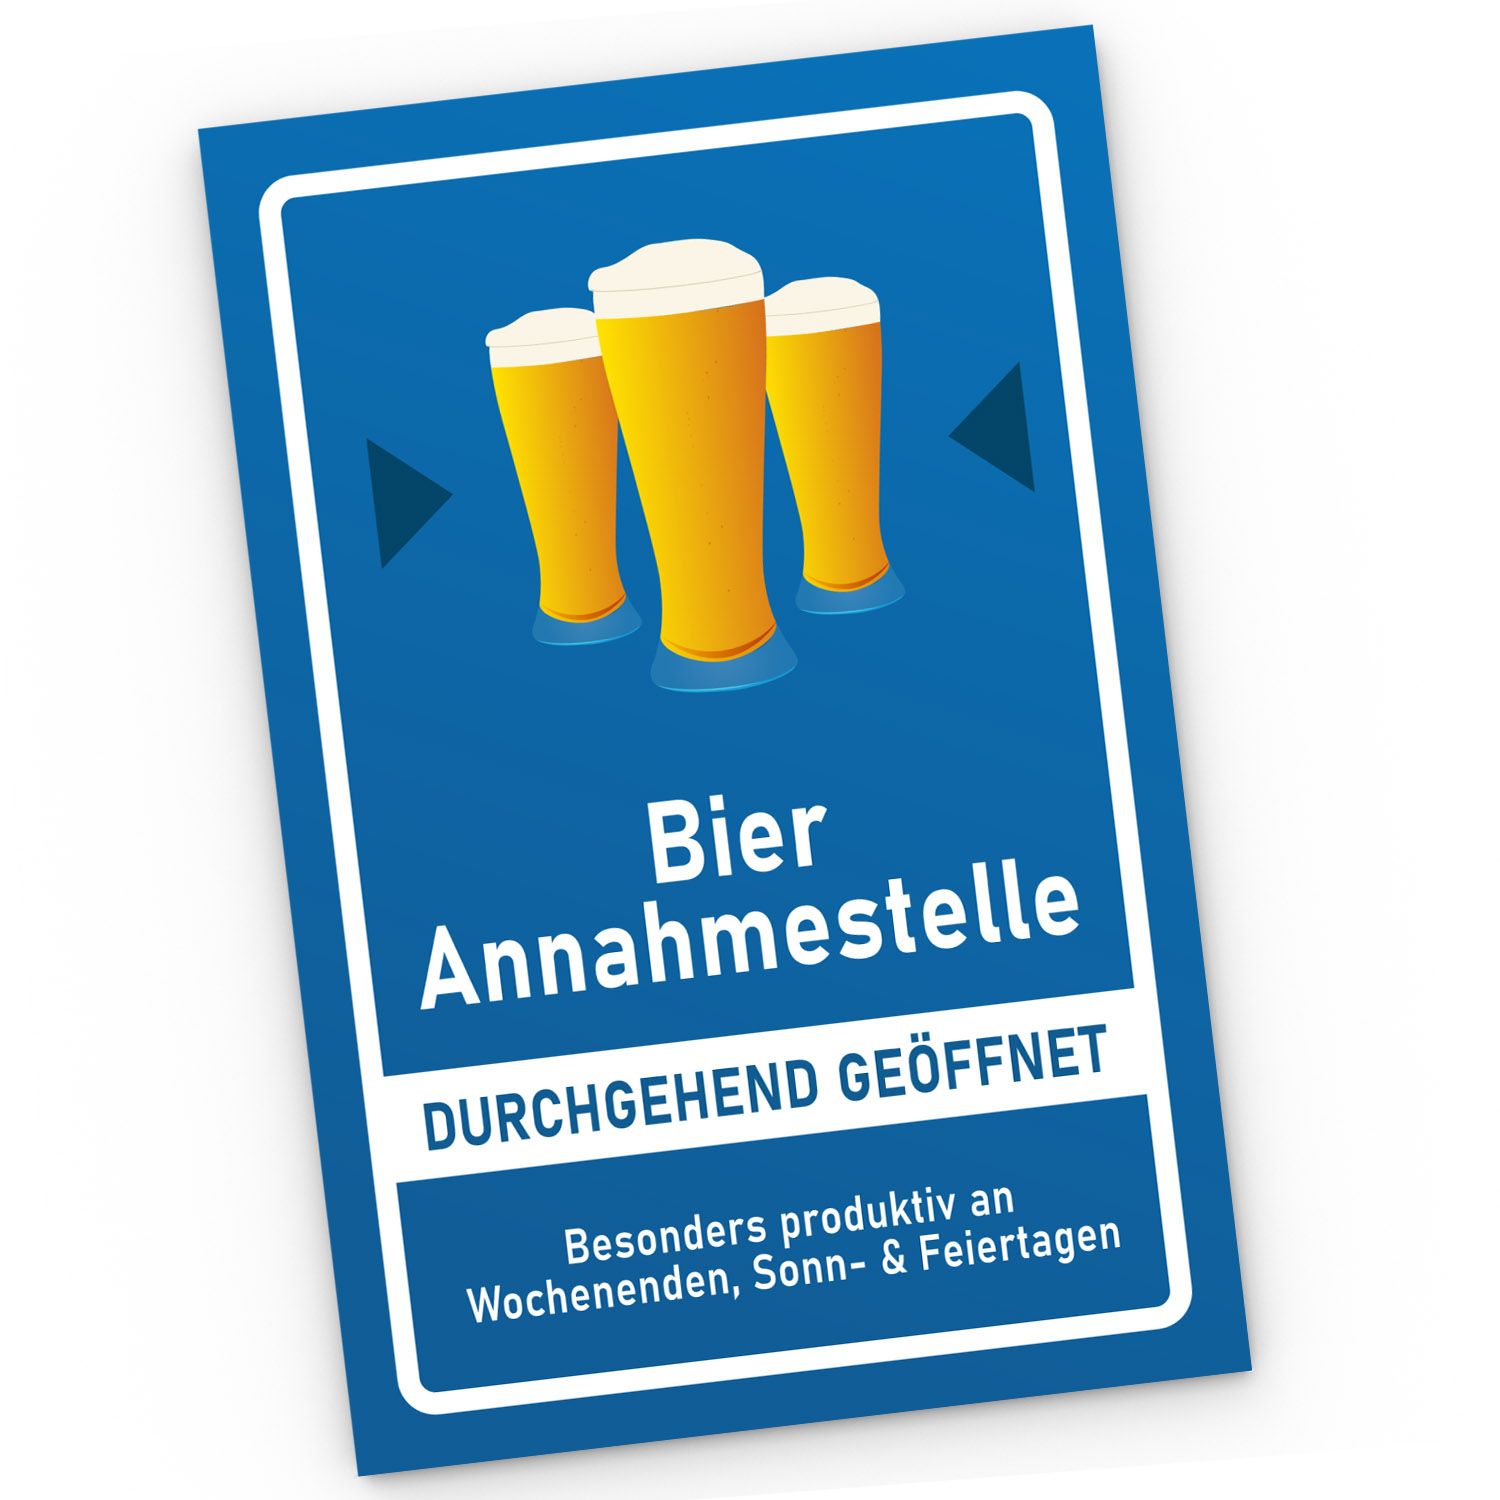 https://images.akowi.de/kunststoff-schild-mit-spruch-lustig-pvc-schild-alkohol-bier-annahmestelle-party-deko-zubehoer-saufen-moonworks--131965.jpg